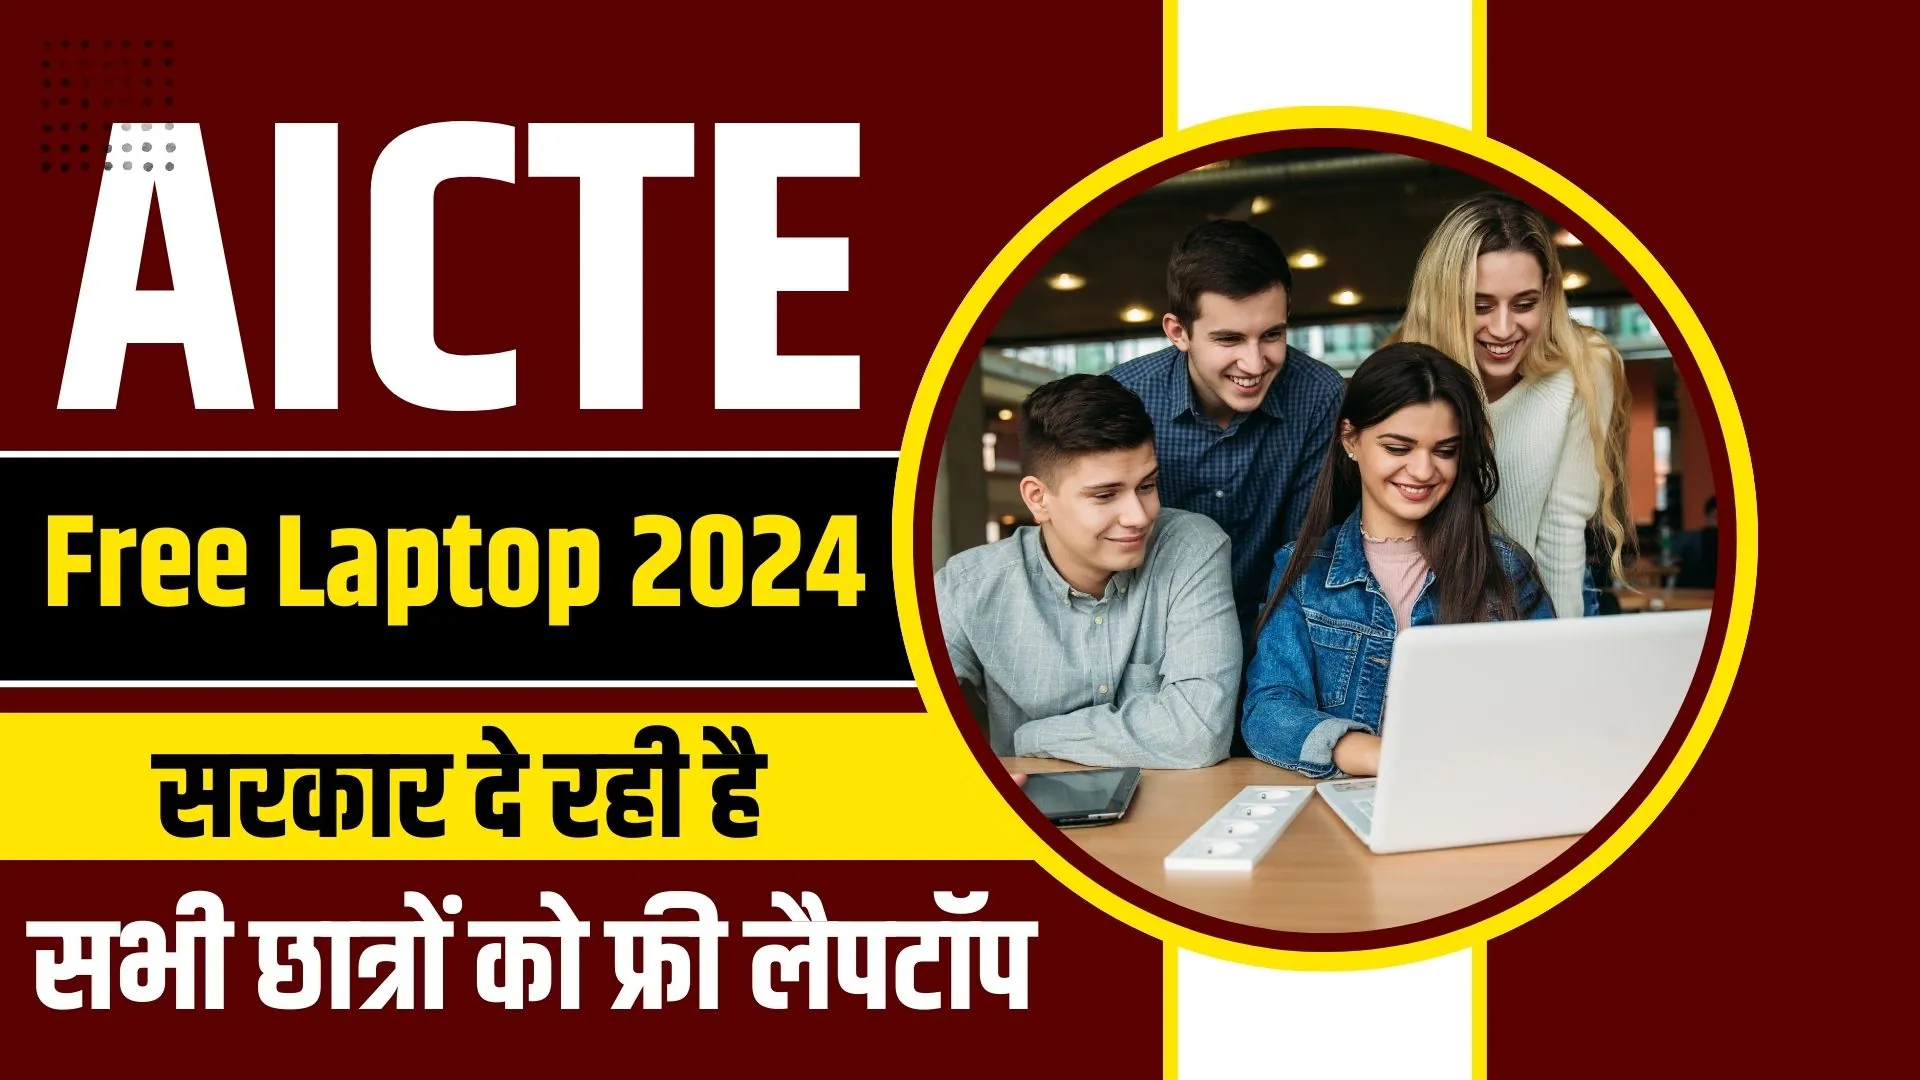 AICTE Free Laptop 2024: सरकार दे रही है सभी छात्रों को फ्री लैपटॉप, यहाँ से करें आवेदन